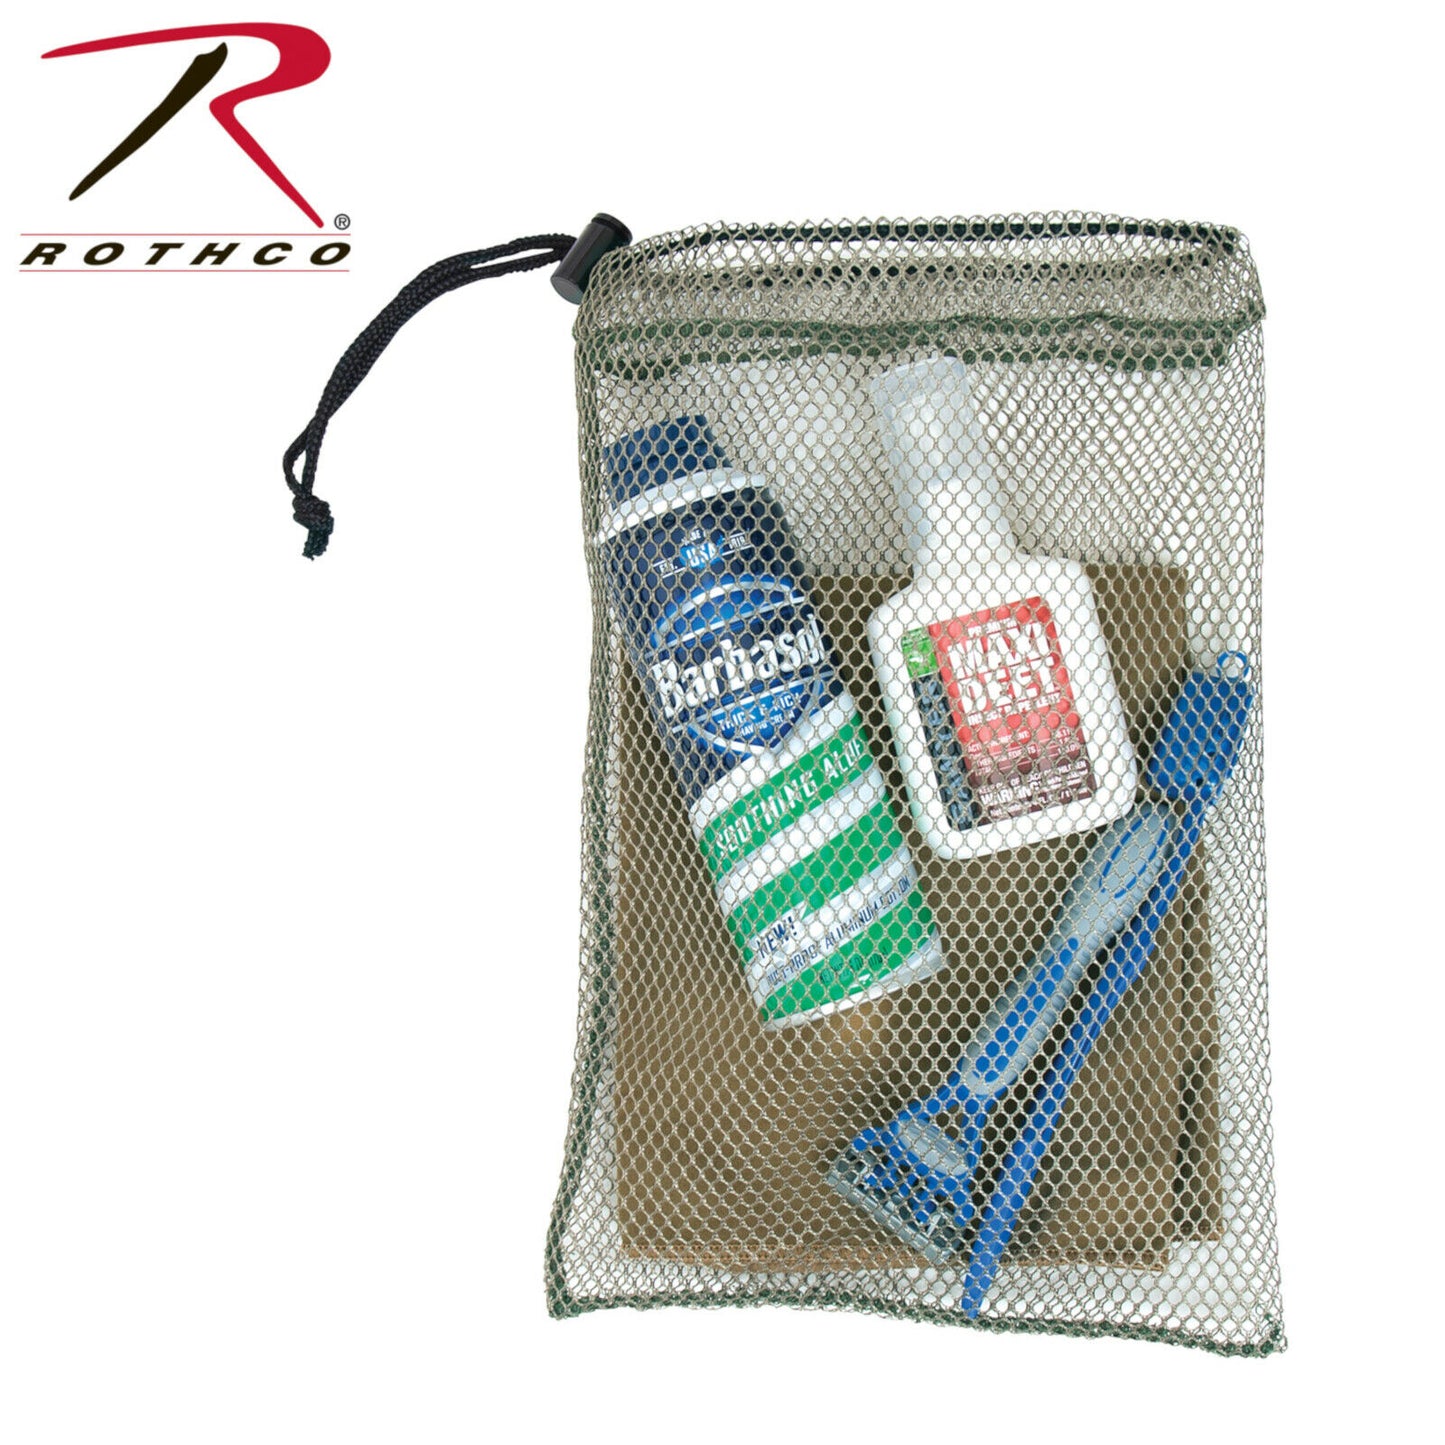 Rothco Small Mesh Ditty Bag 8" x 12" - Mesh Barracks Toiletry Bag